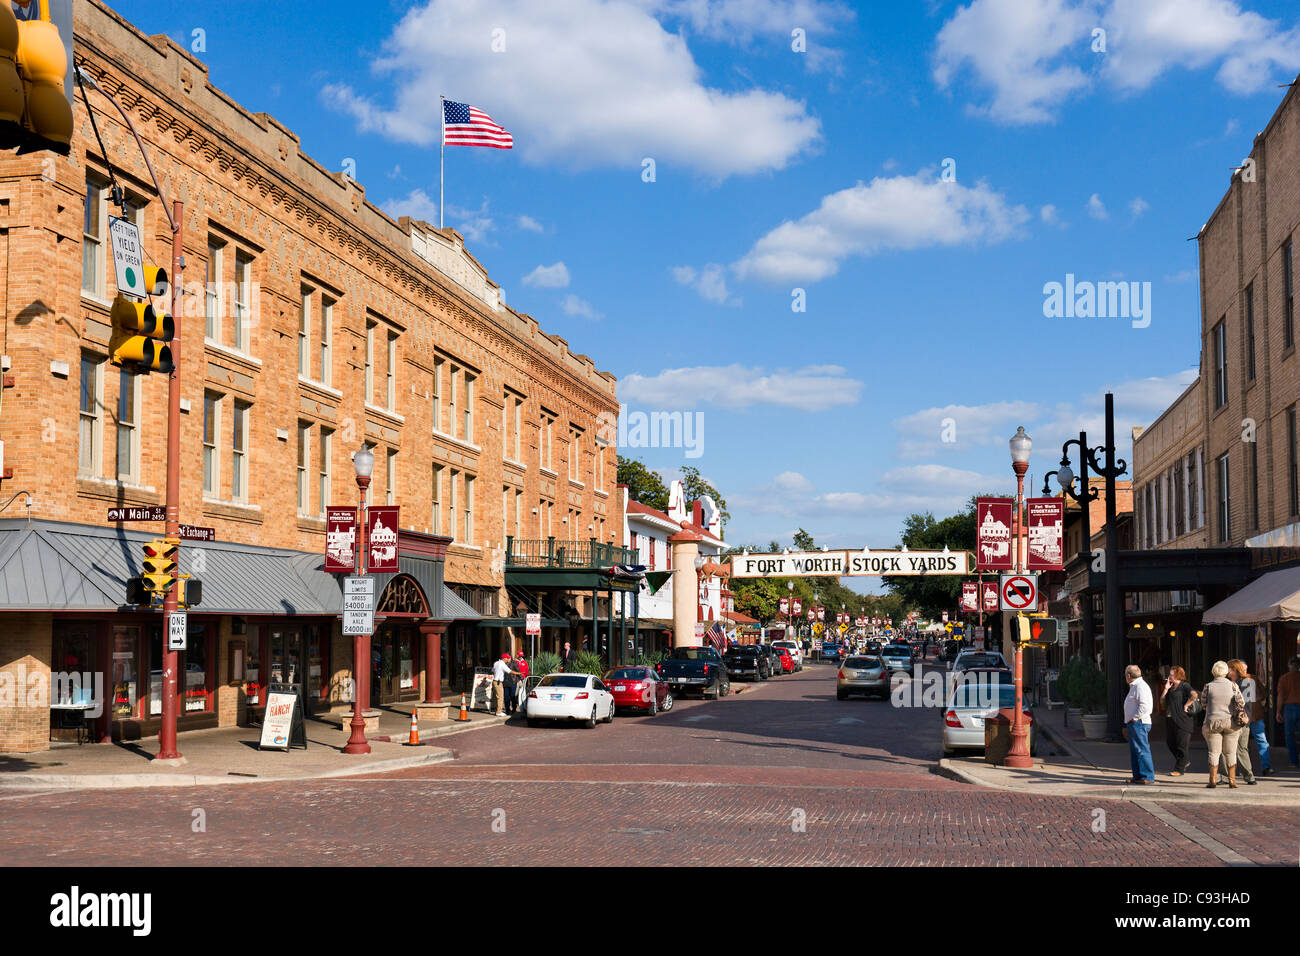 Exchange Avenue al bivio con la strada principale con lo Stockyards Hotel a sinistra, Stockyards distretto, Fort Worth, Texas, Stati Uniti d'America Foto Stock